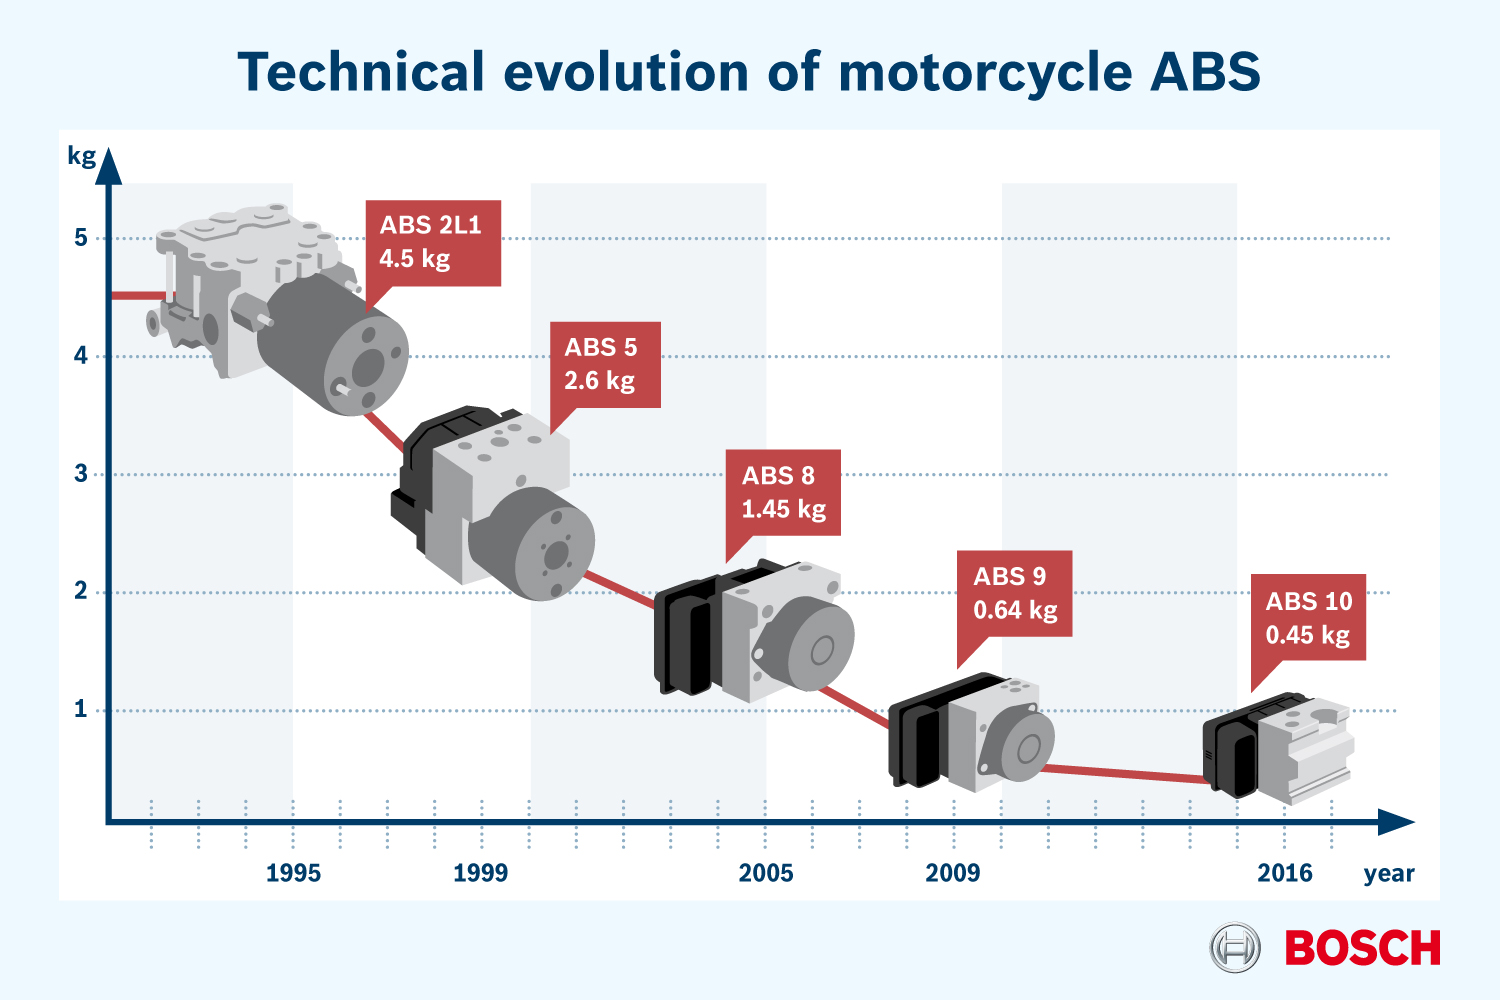 EICMA 2015 - Bosch presenta la nuova generazione del sistema ABS per motocicli